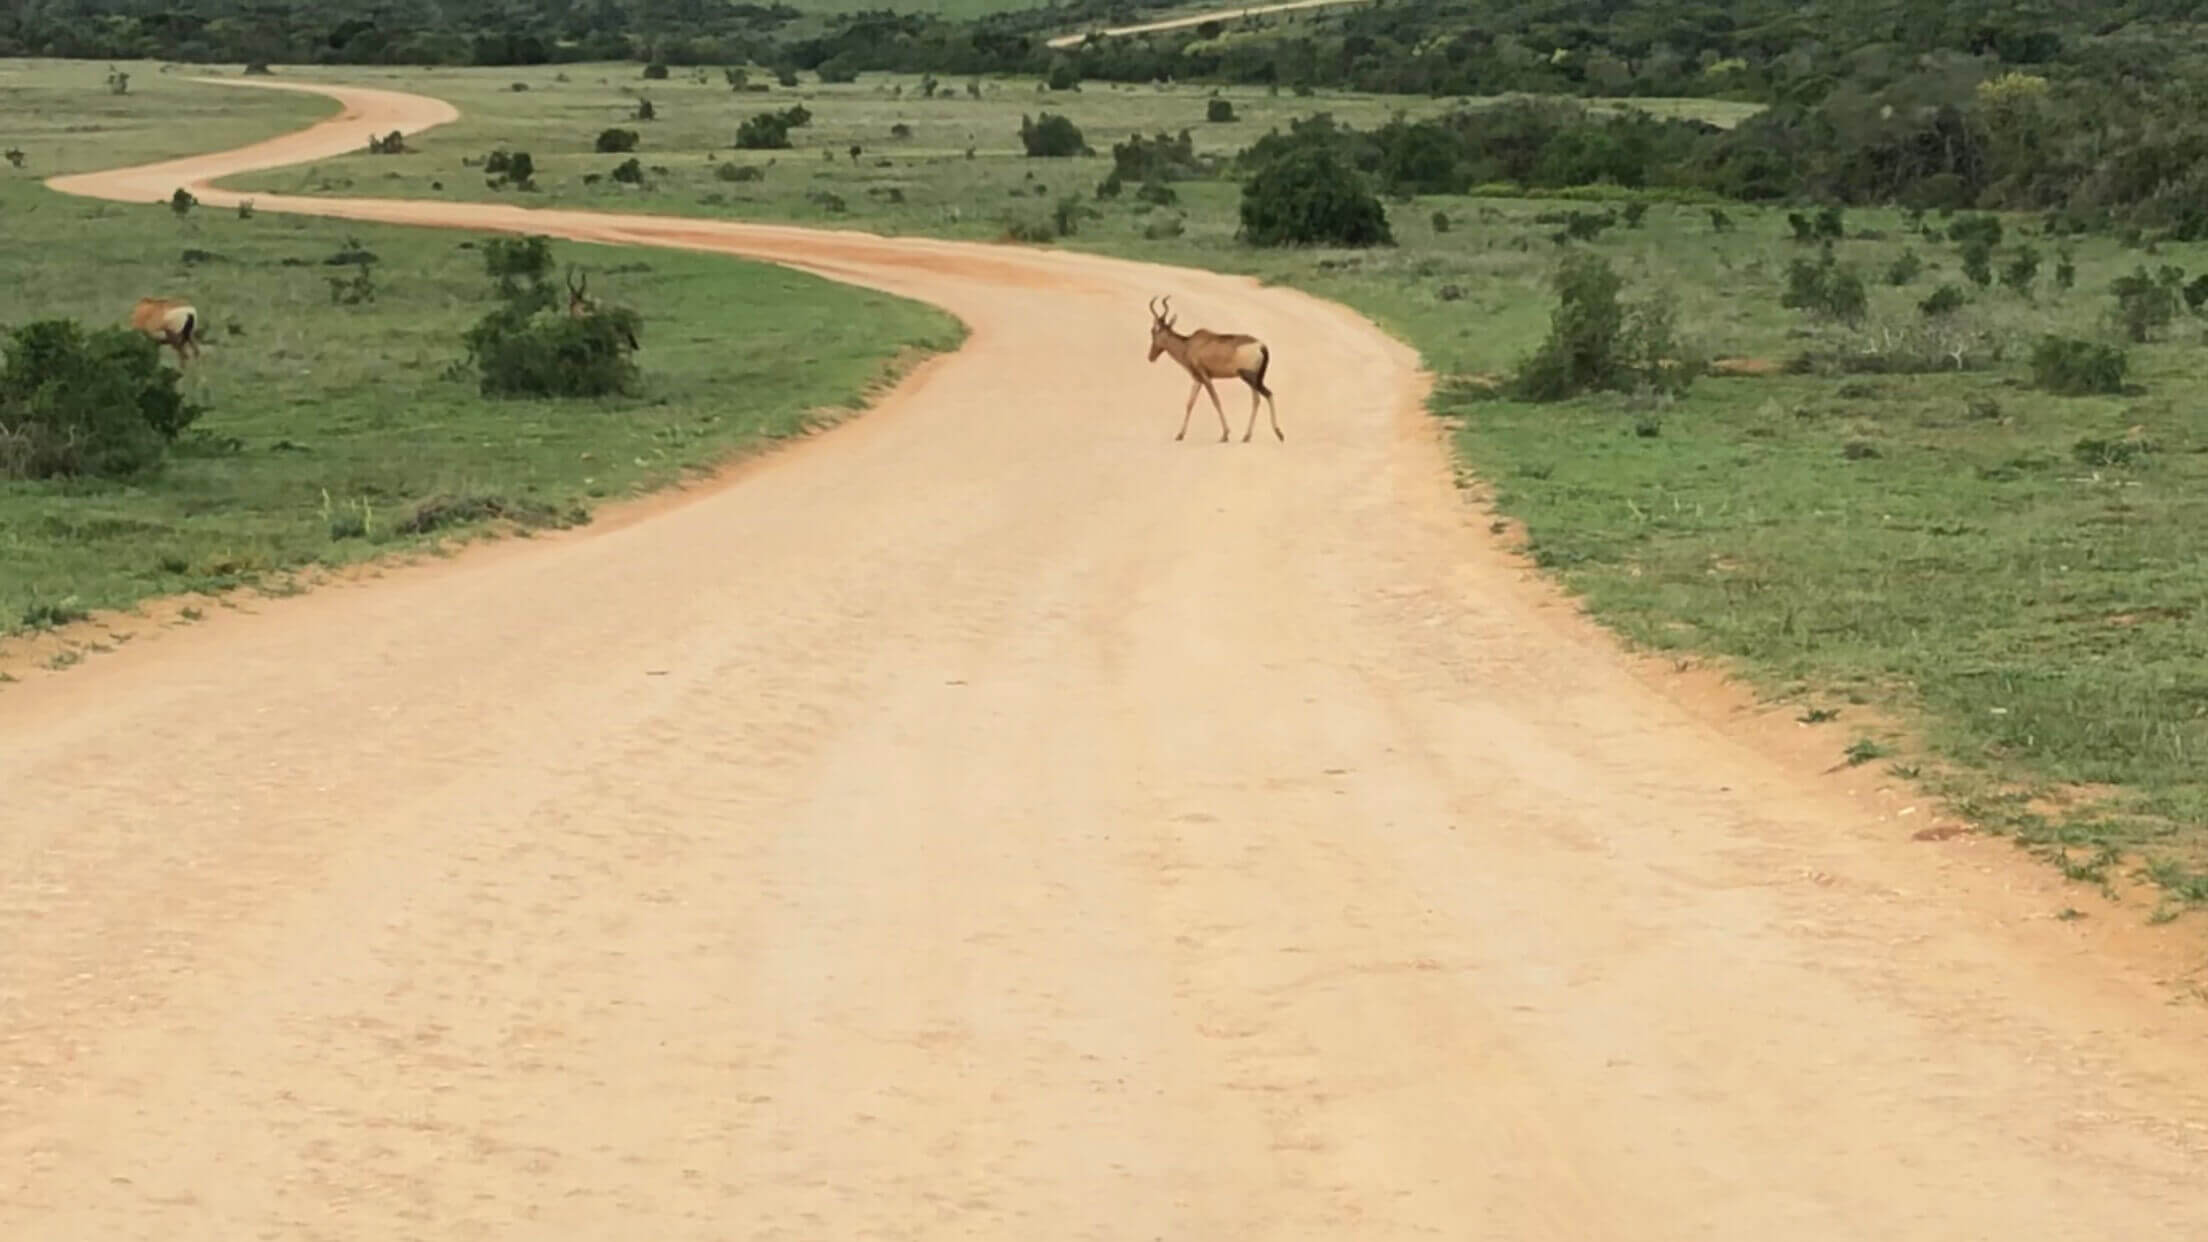 Um hartebeest atravessando uma estrada de terra batida no Addo